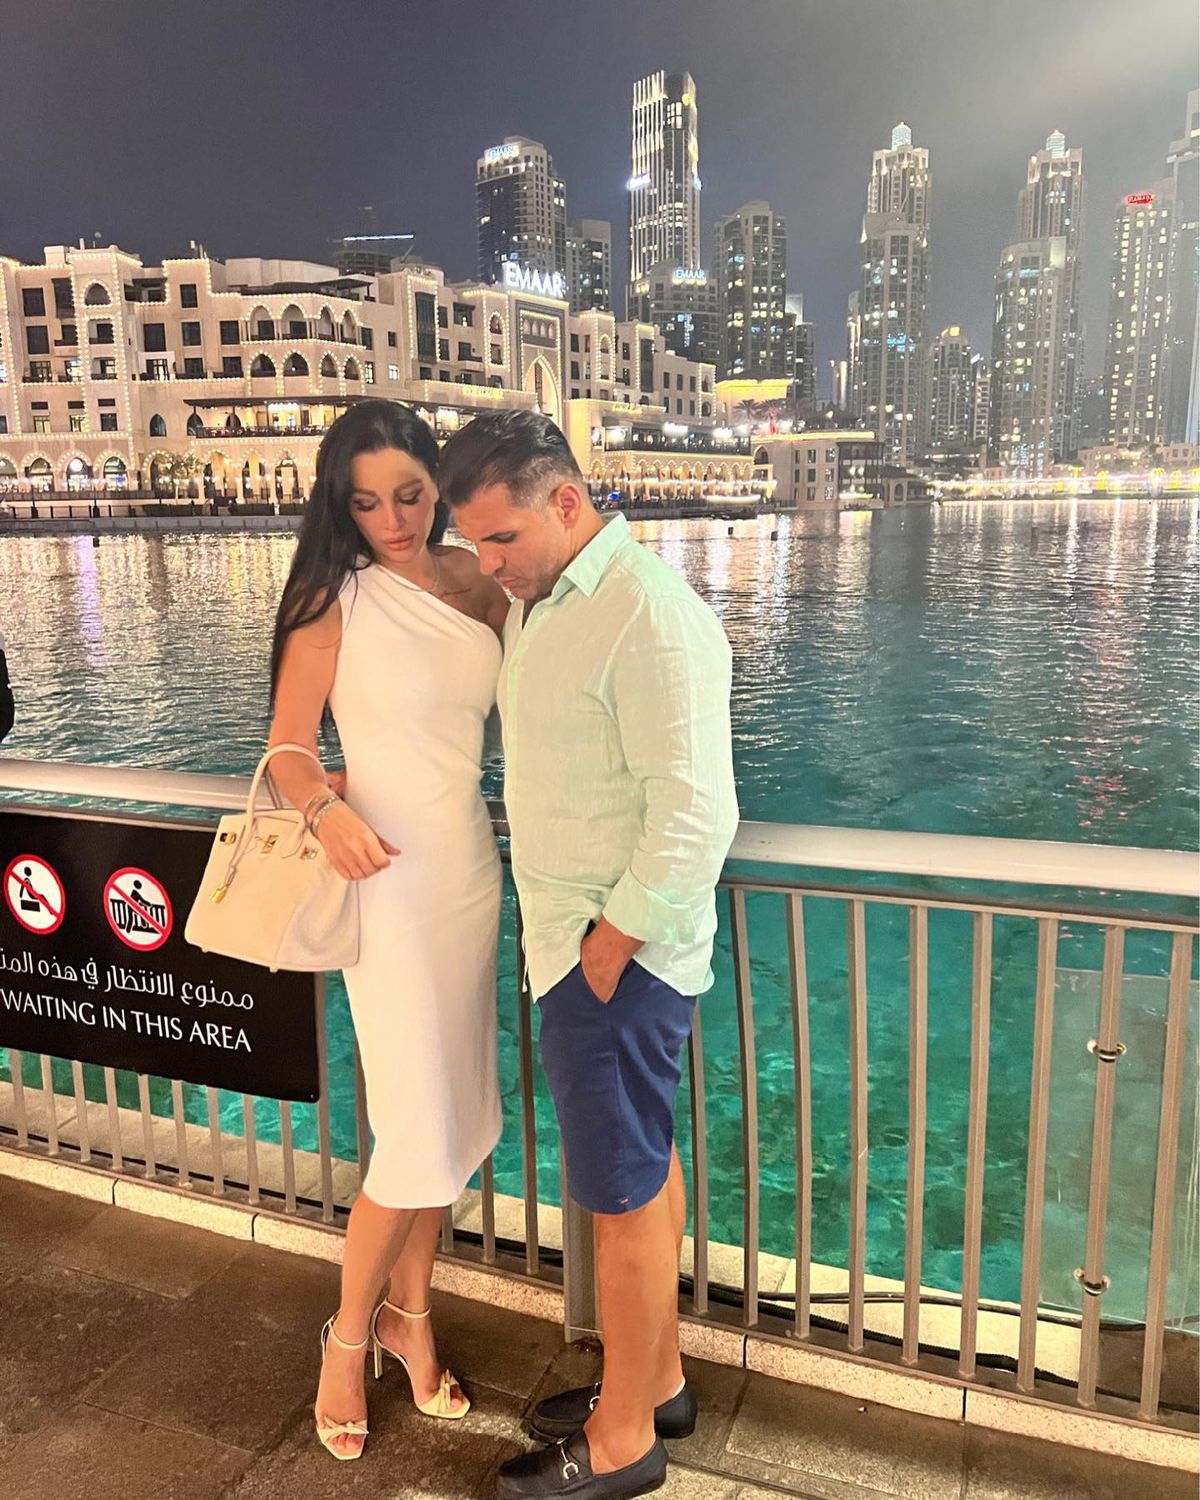 Probleme pentru fosta soție a lui Ilie Năstase, după ce și-a vândut casele și s-a mutat în Dubai: „Sunt foarte mincinoși și mă tot amână”